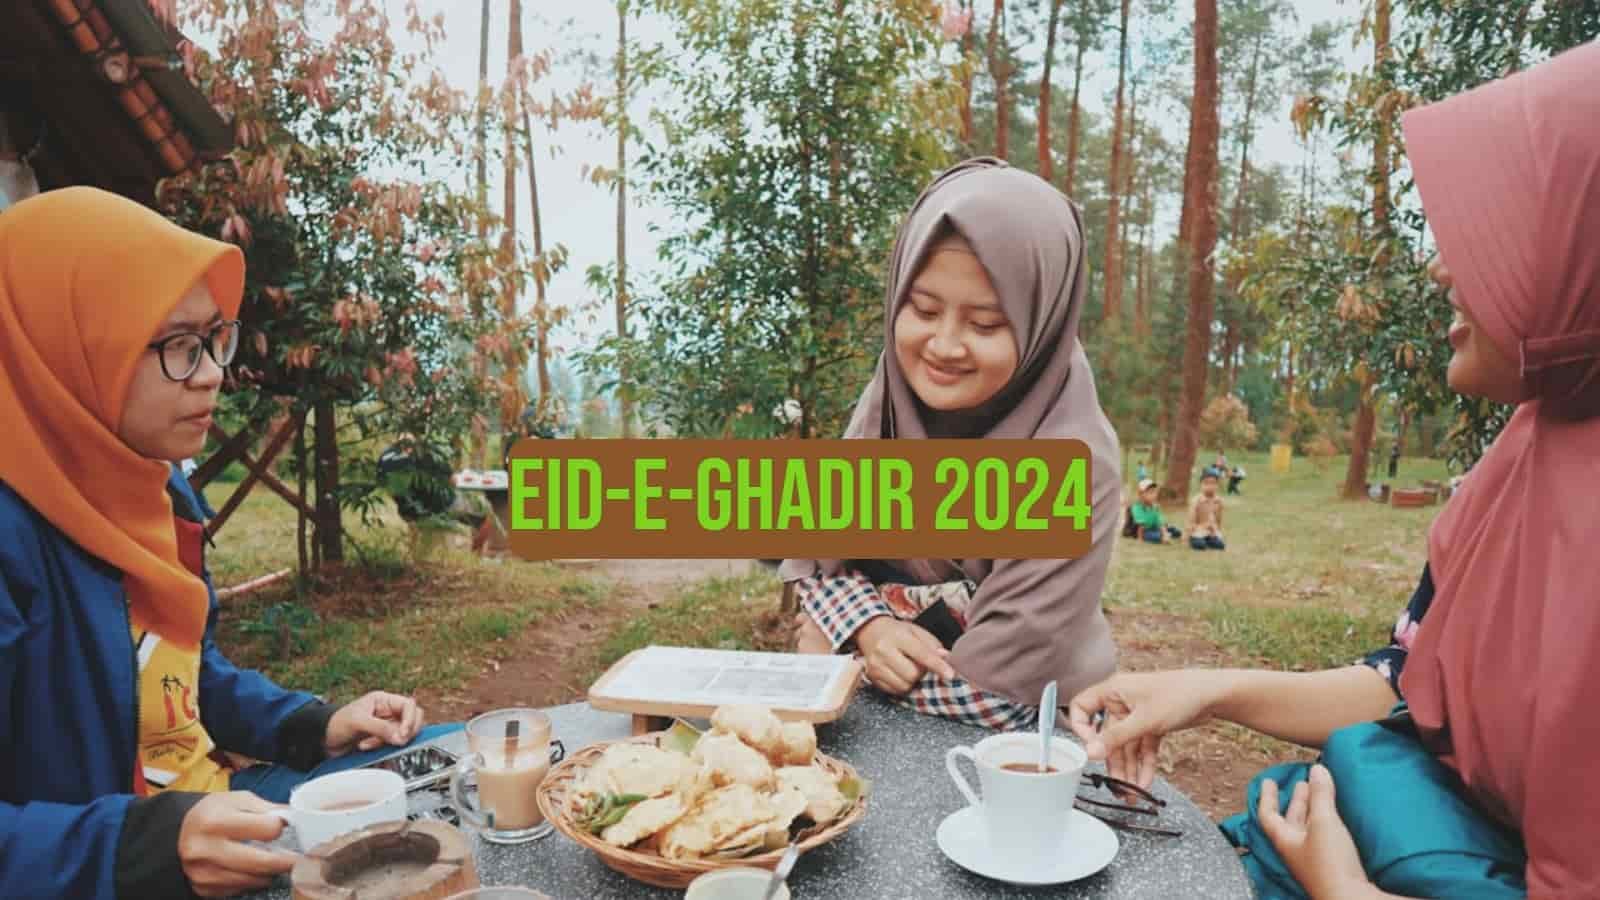 Eid-e-Ghadir 2024 Celebrate the Light of Leadership